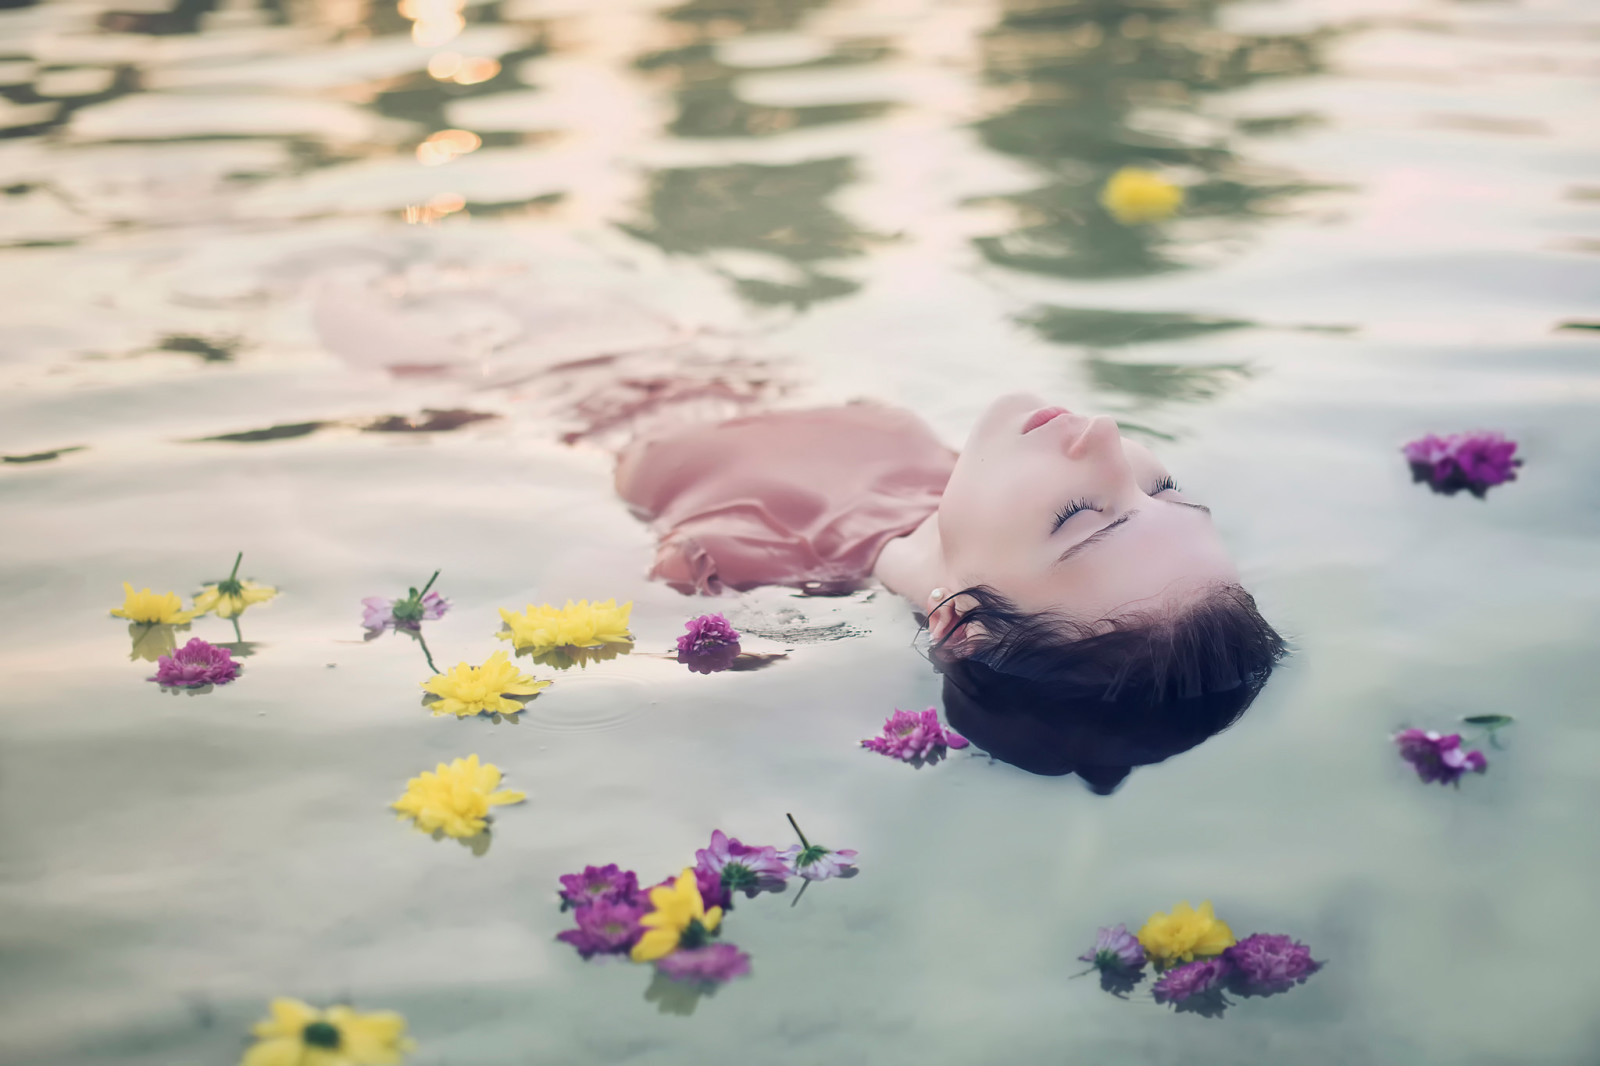 gadis, bunga-bunga, di dalam air, Andrea Peipe